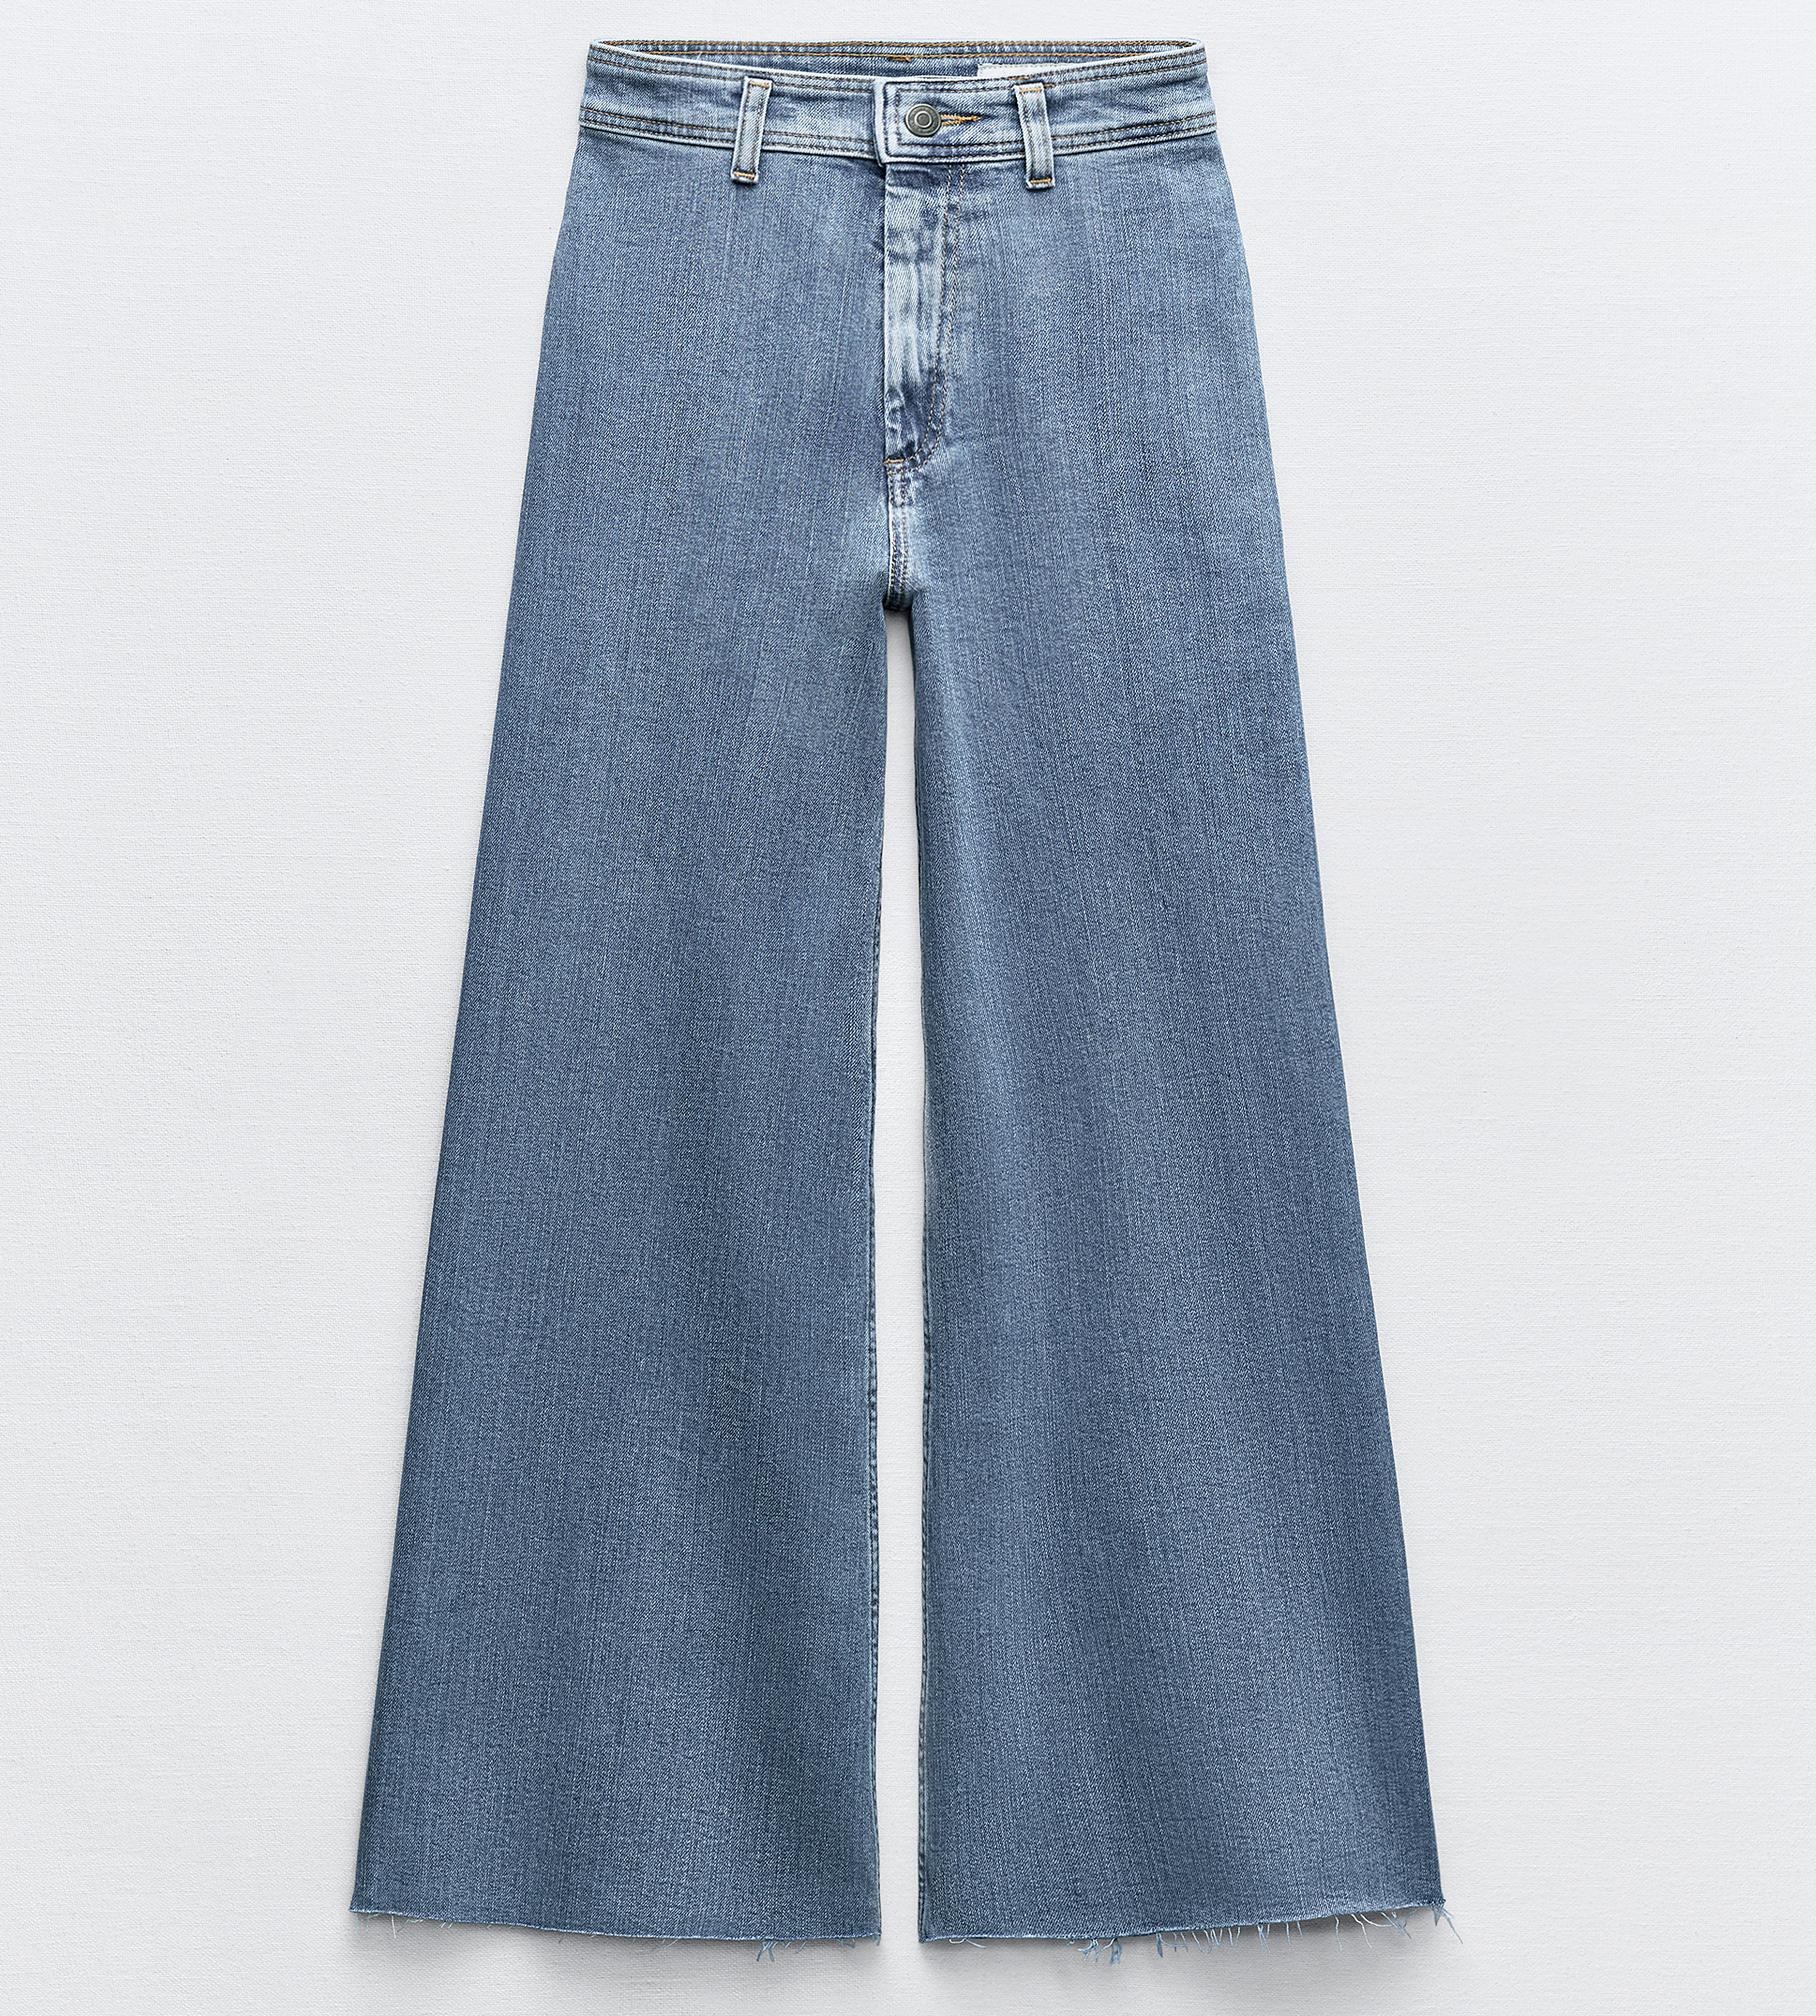 Джинсы Zara Zw Collection Marine Straight-leg High-waist, светло-синий узкие джинсы женские уличные джинсы с высокой талией длиной до щиколотки летние модные женские джинсы стрейч с прямыми штанинами